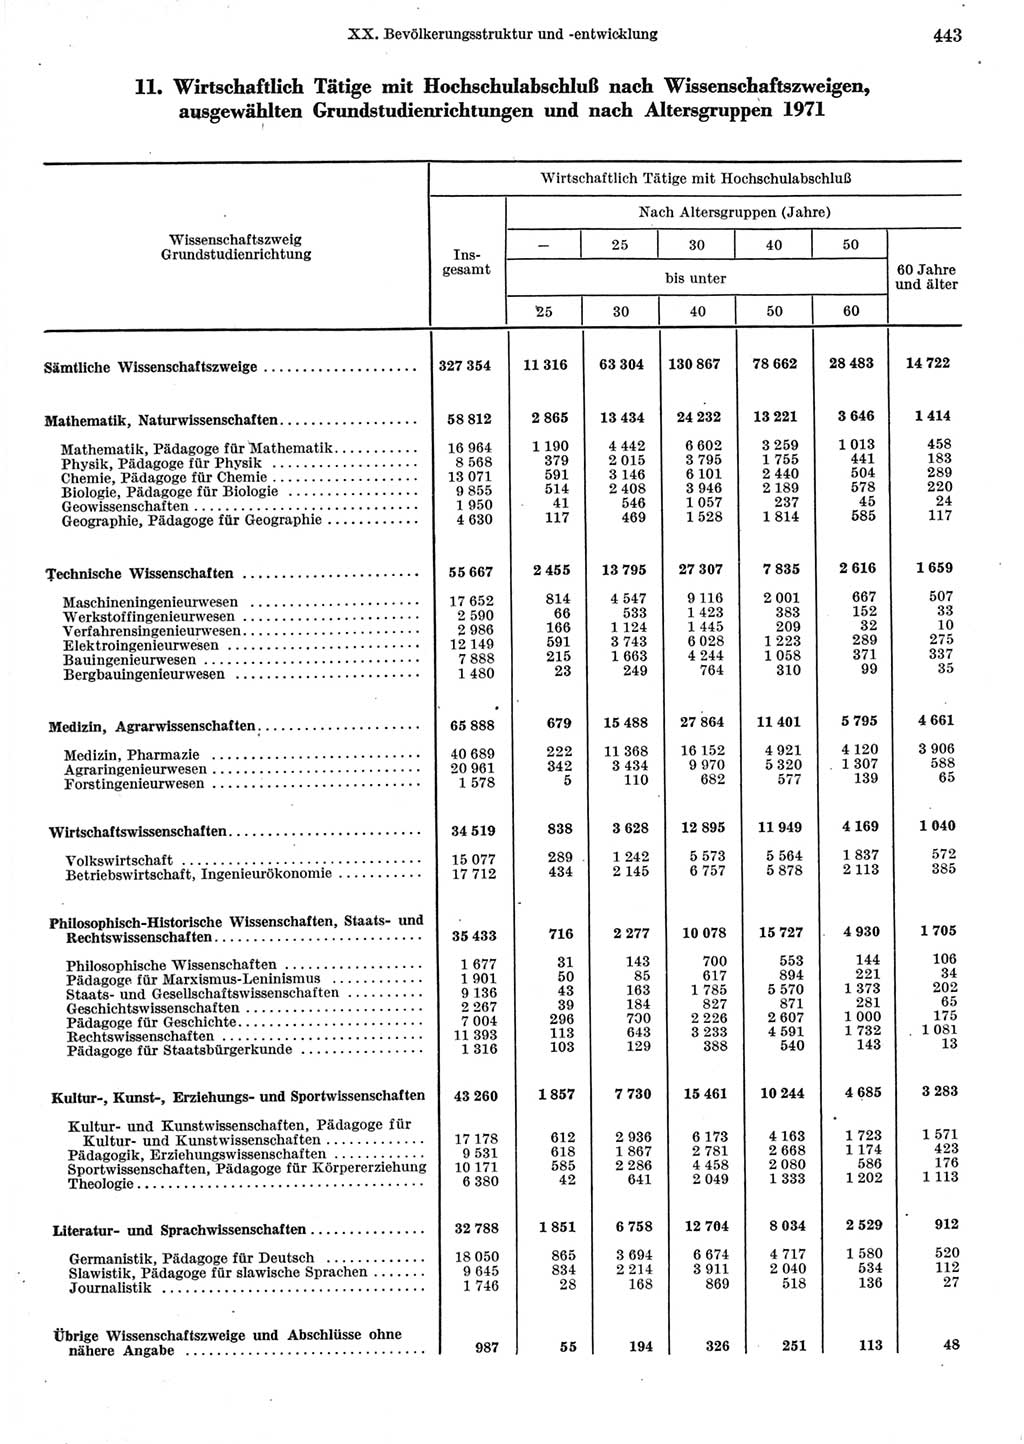 Statistisches Jahrbuch der Deutschen Demokratischen Republik (DDR) 1973, Seite 443 (Stat. Jb. DDR 1973, S. 443)